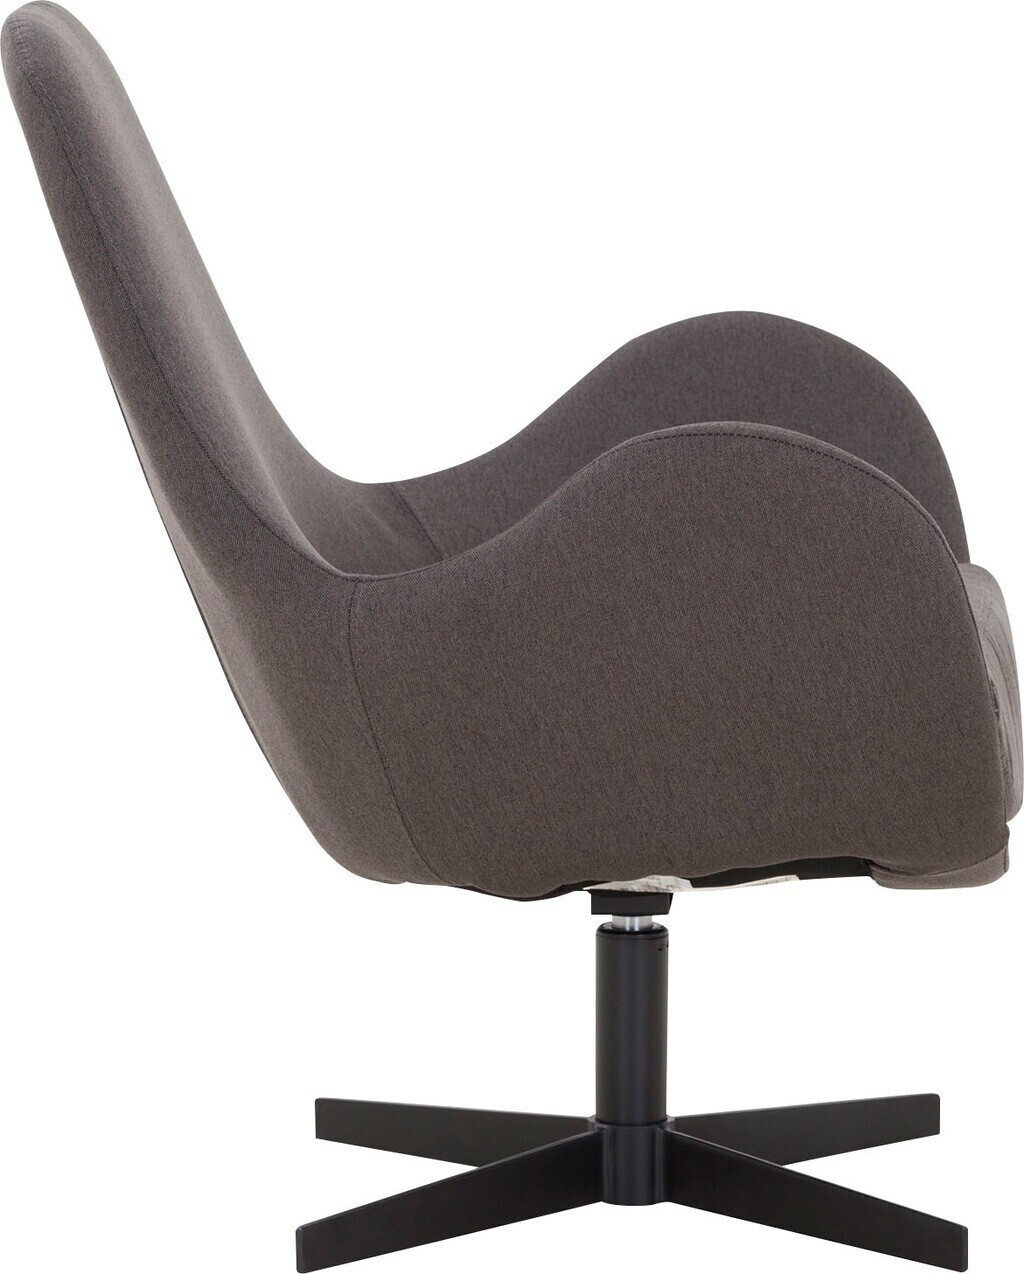 SalesFever Polster-Sessel mit € 402,94 ab Preisvergleich bei Textil/Metall | 72x69x85cm (395646) Drehfunktion dunkelgrau-schwarz